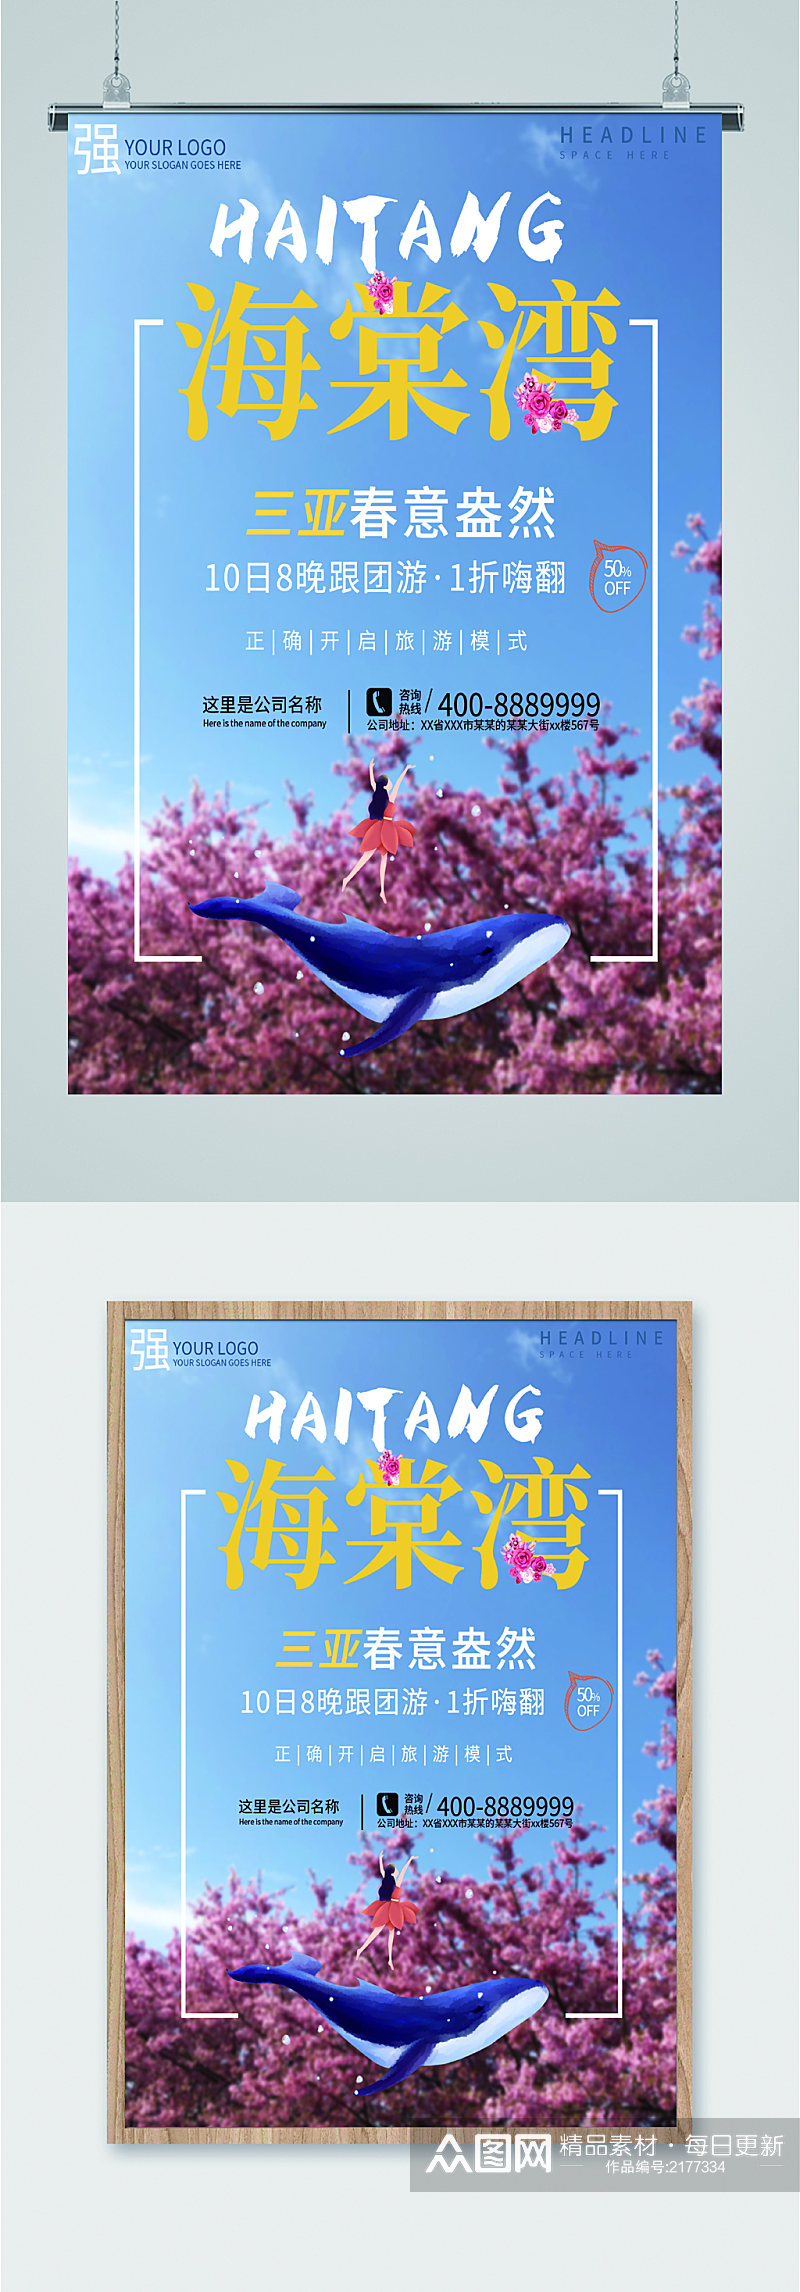 海棠湾旅游景色海报素材